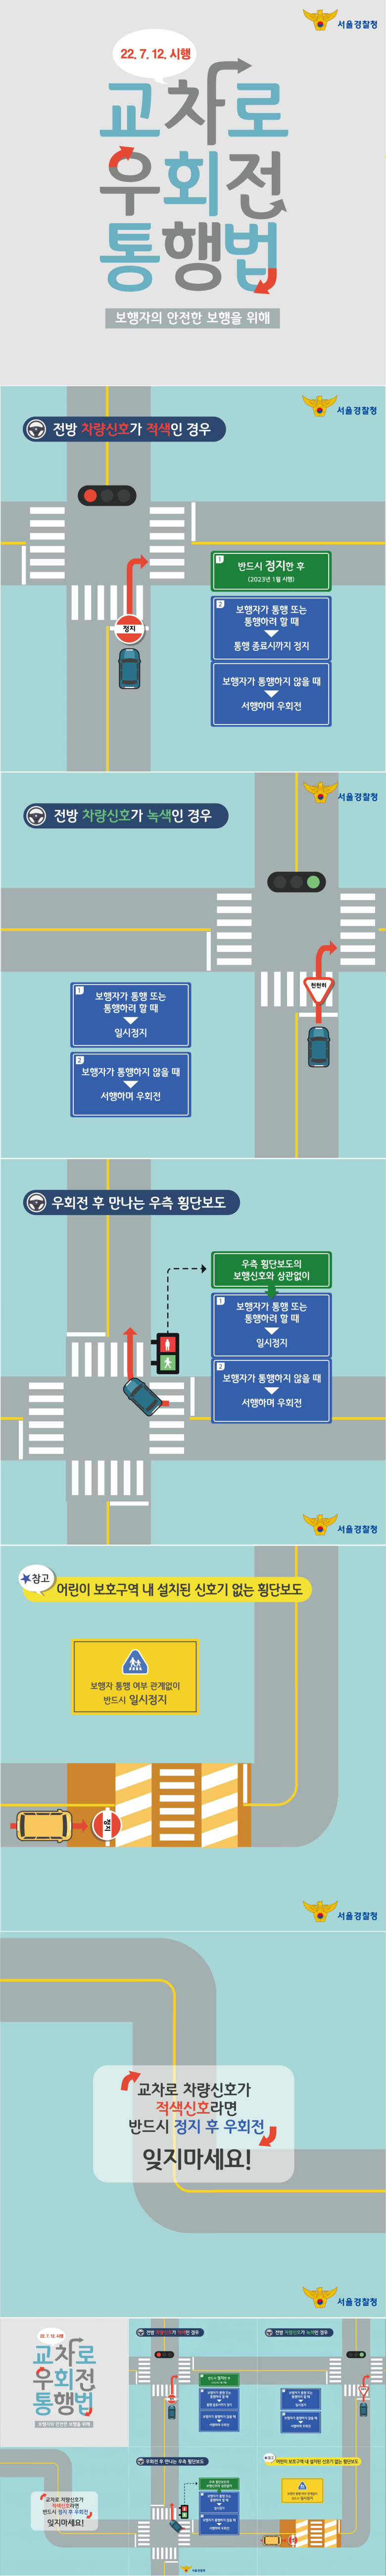 7월 12일 시행 도로교통법 일부 개정안 